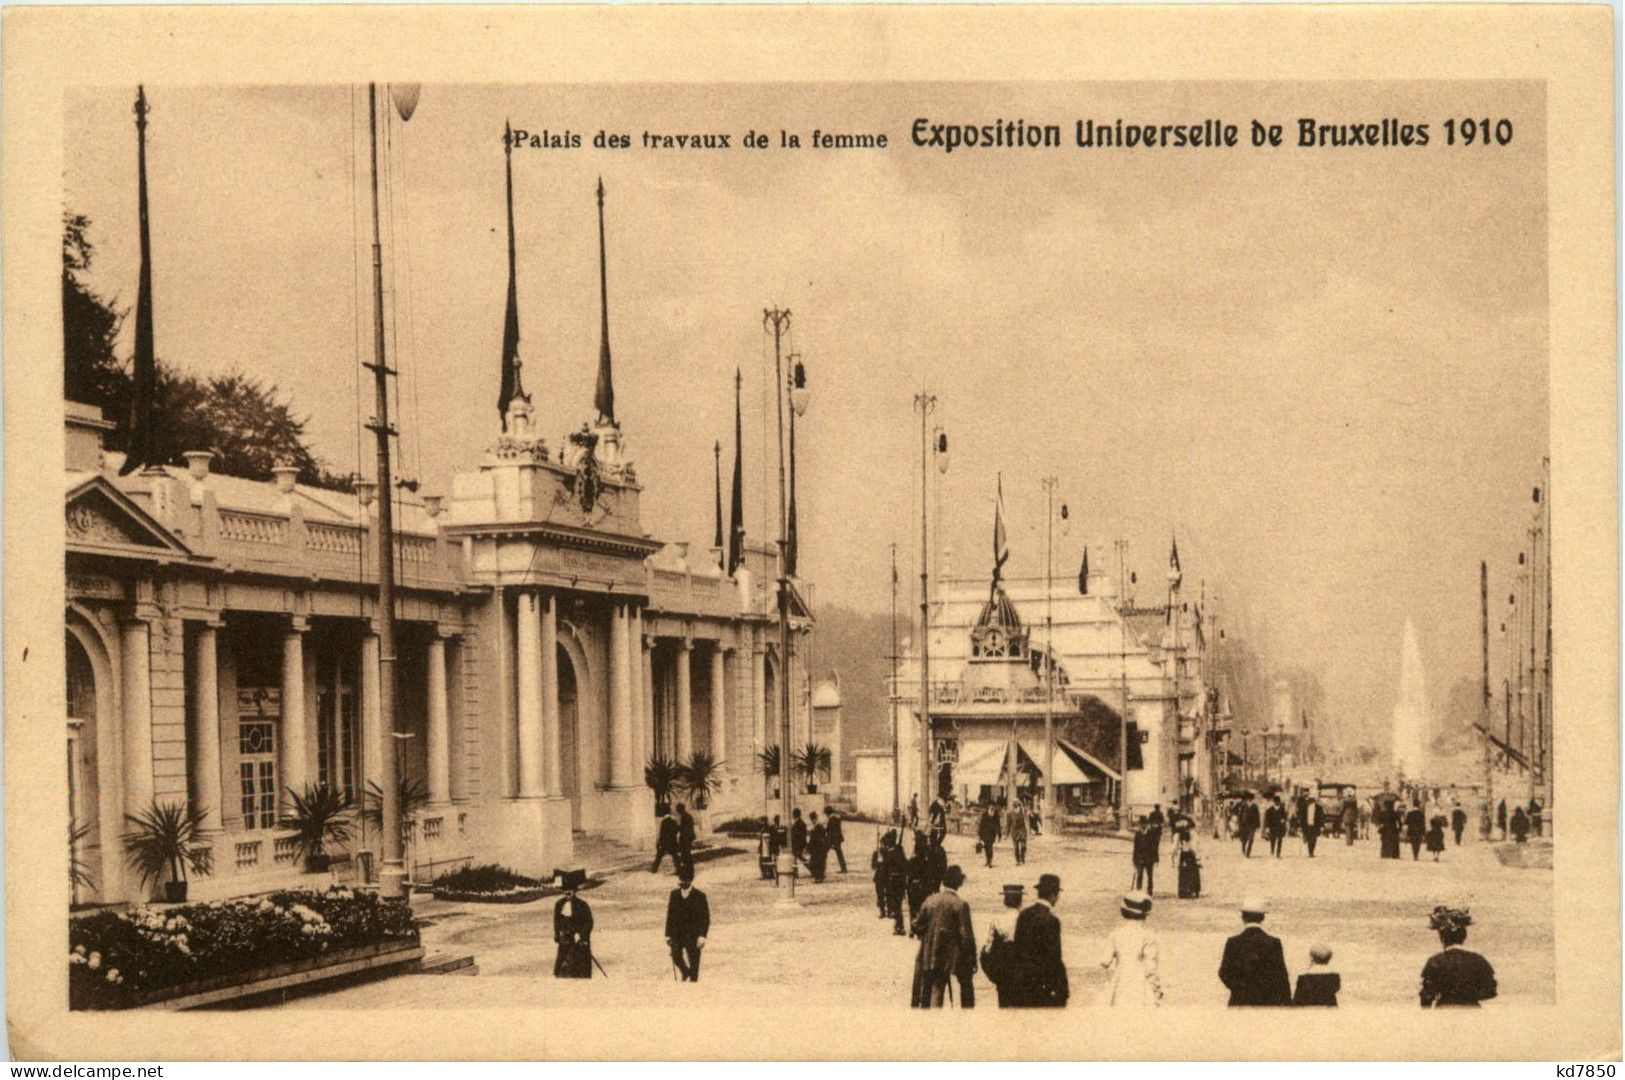 Expostition Universelle De Bruxelles 1910 - Mostre Universali